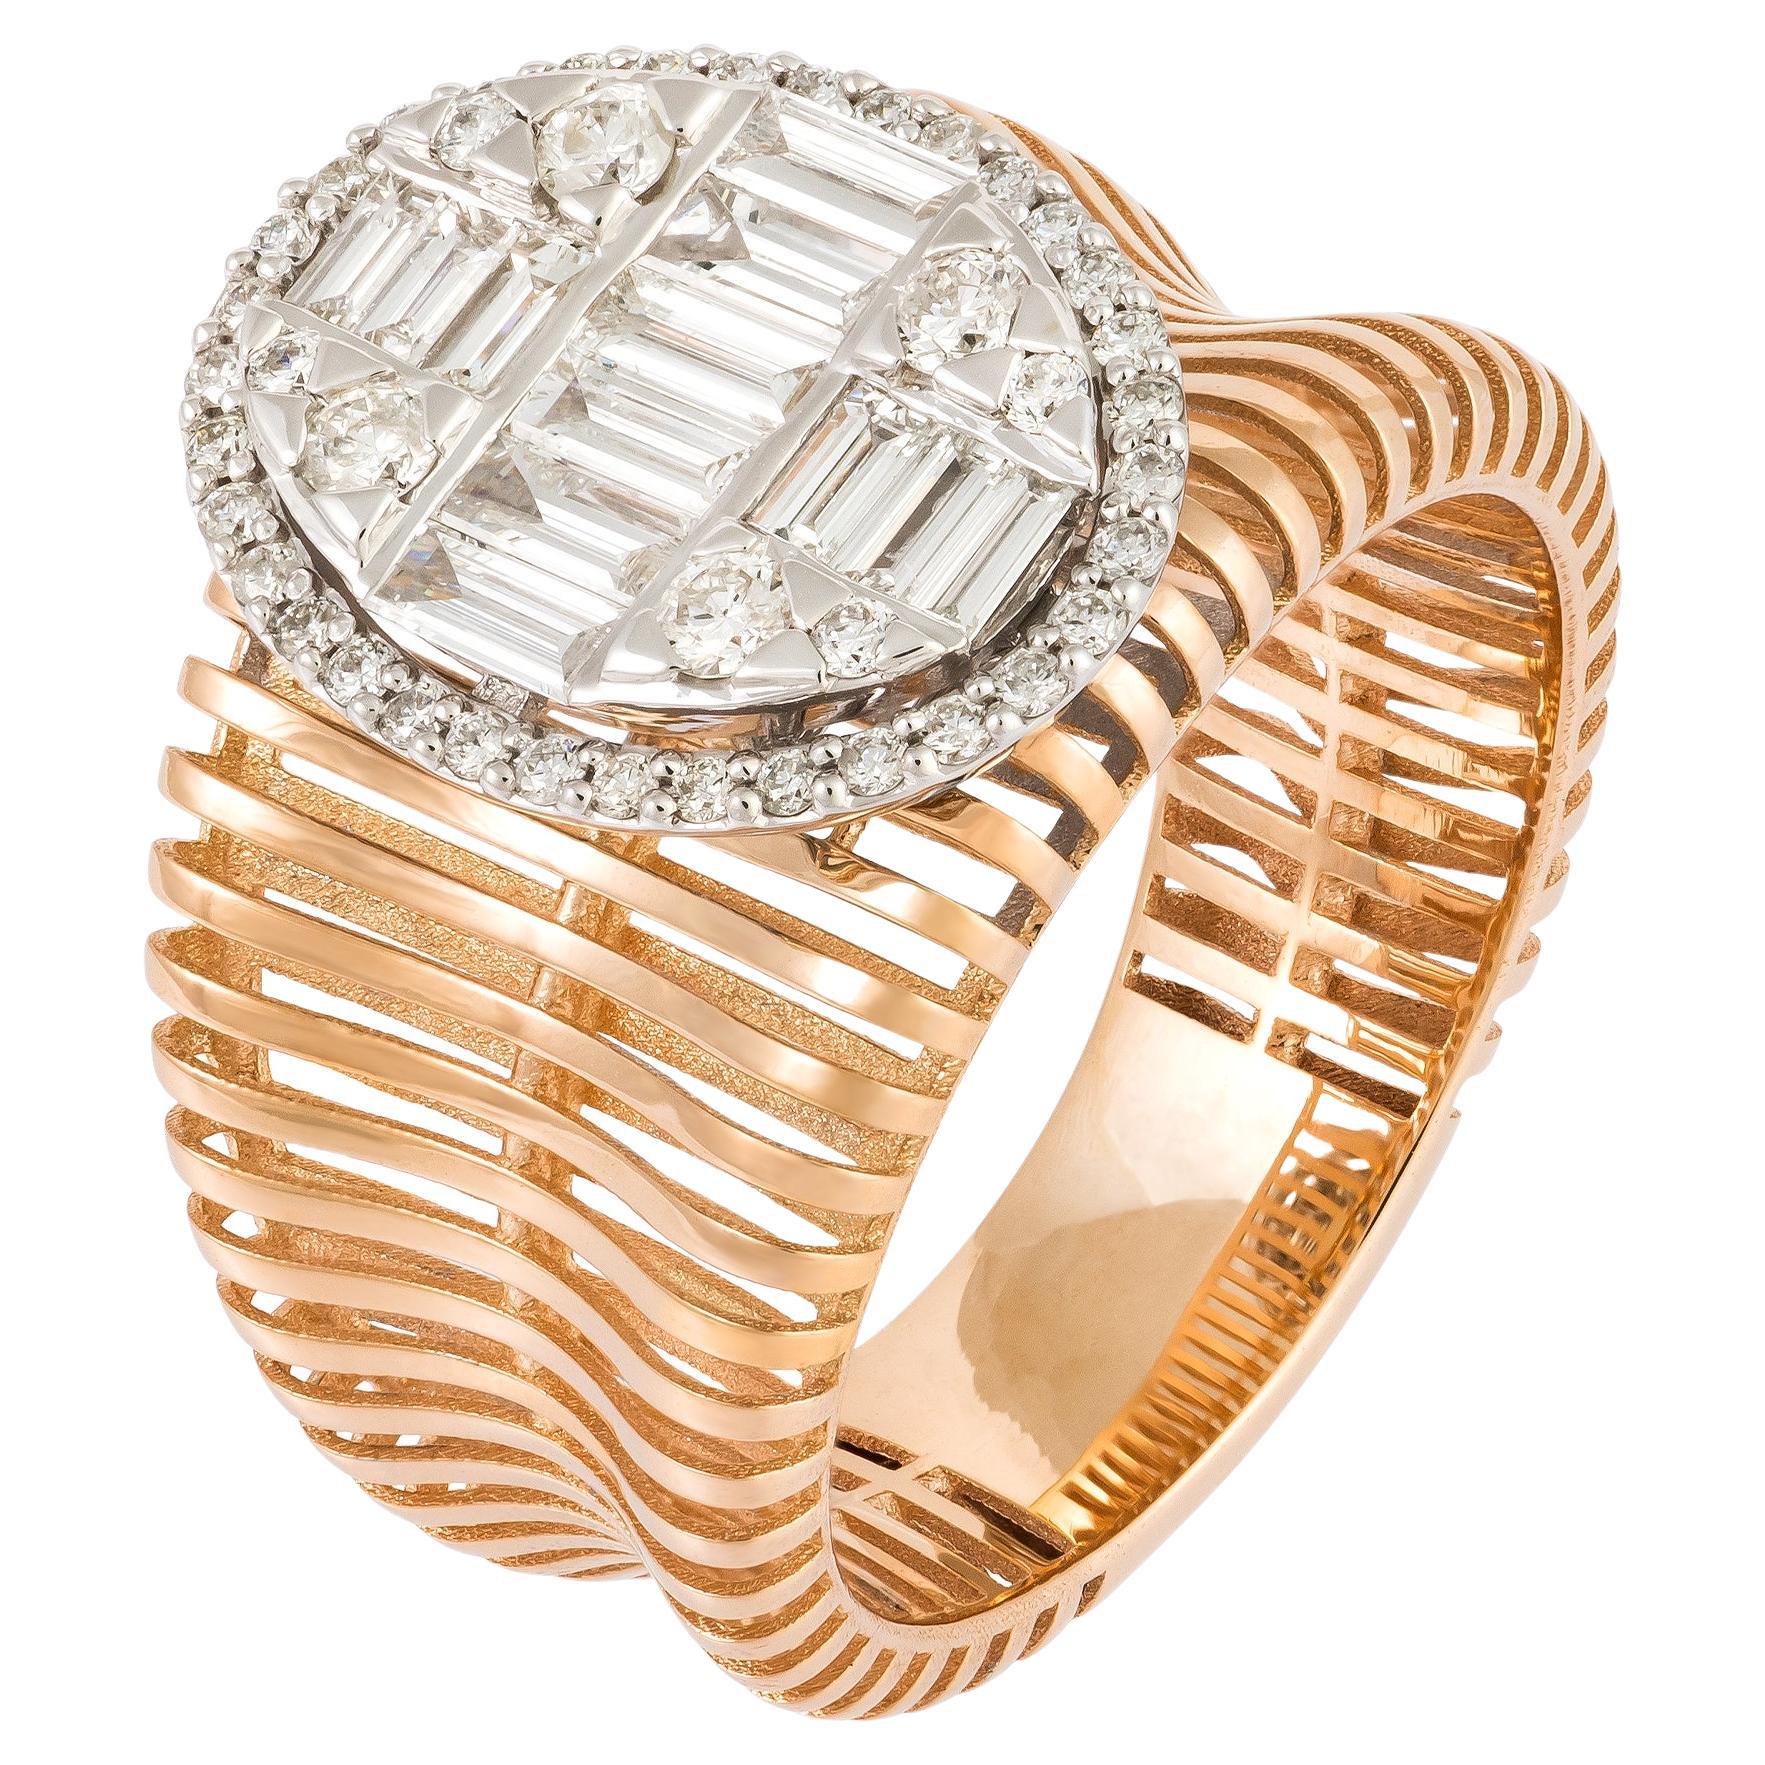 Monumental White Pink 18K Gold White Diamond Ring for Her